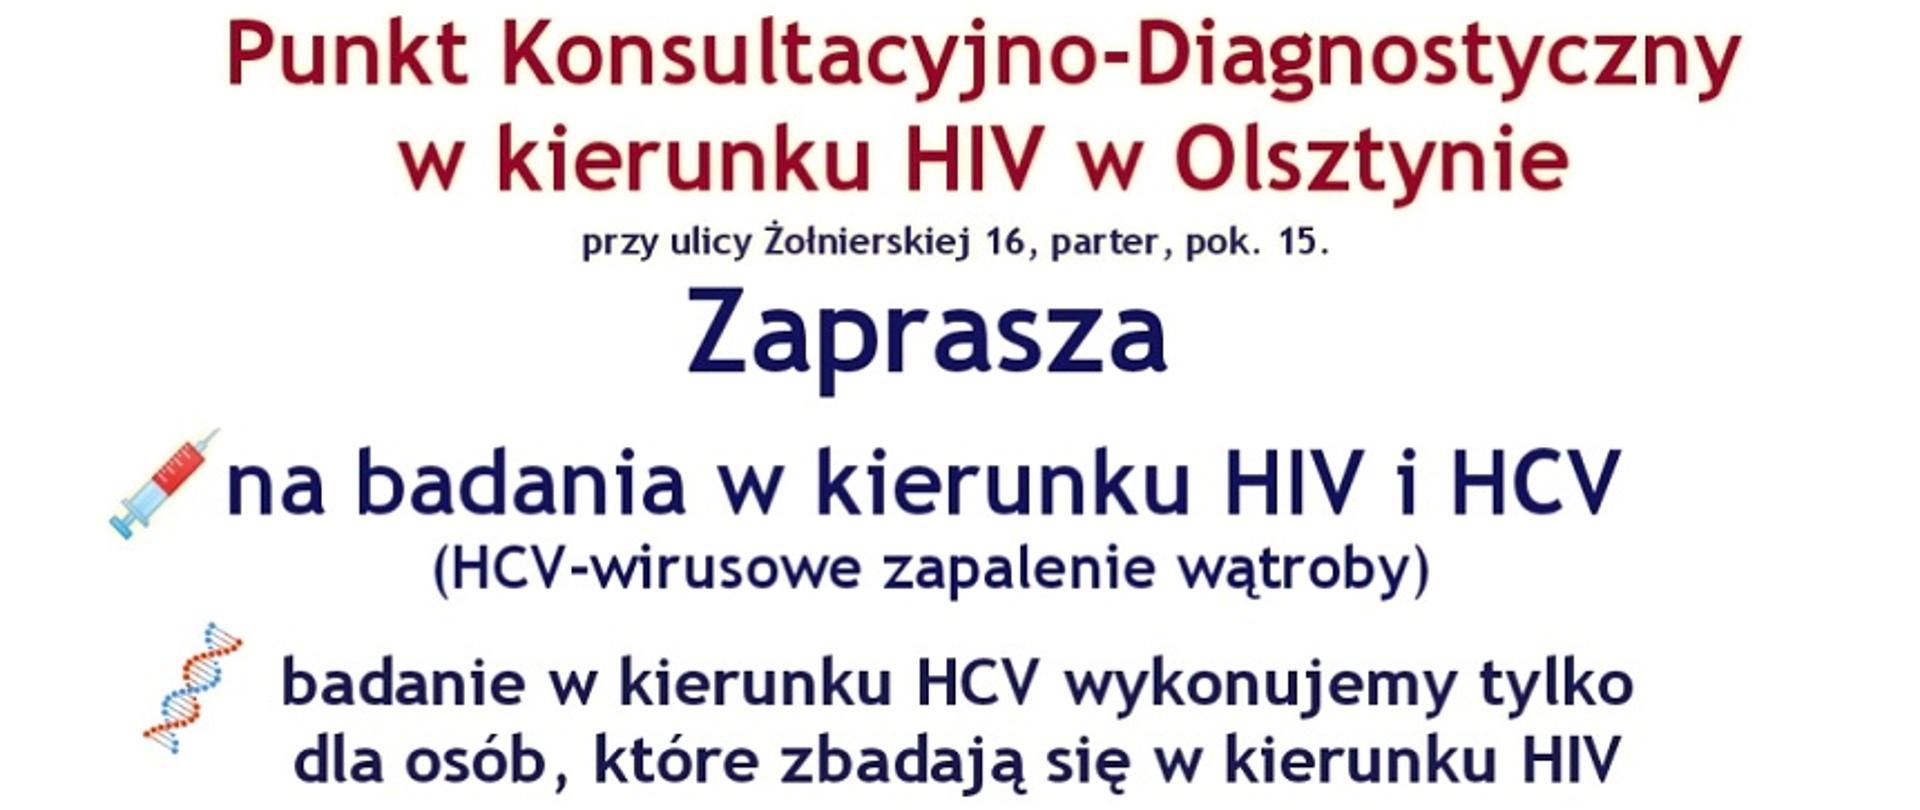 Plakat z informacjami: Punkt Konsultacyjno-Diagnostyczny w kierunku HIV Olsztynie przy ul. Żołnierskiej 16, parter, pokój 15 zaprasza na badania w kierunku HIV i HCV (wirusowe zapalenie wątroby). Badanie w kierunku HCV wykonujemy tylko dla osób, które zbadają się w kierunku HIV